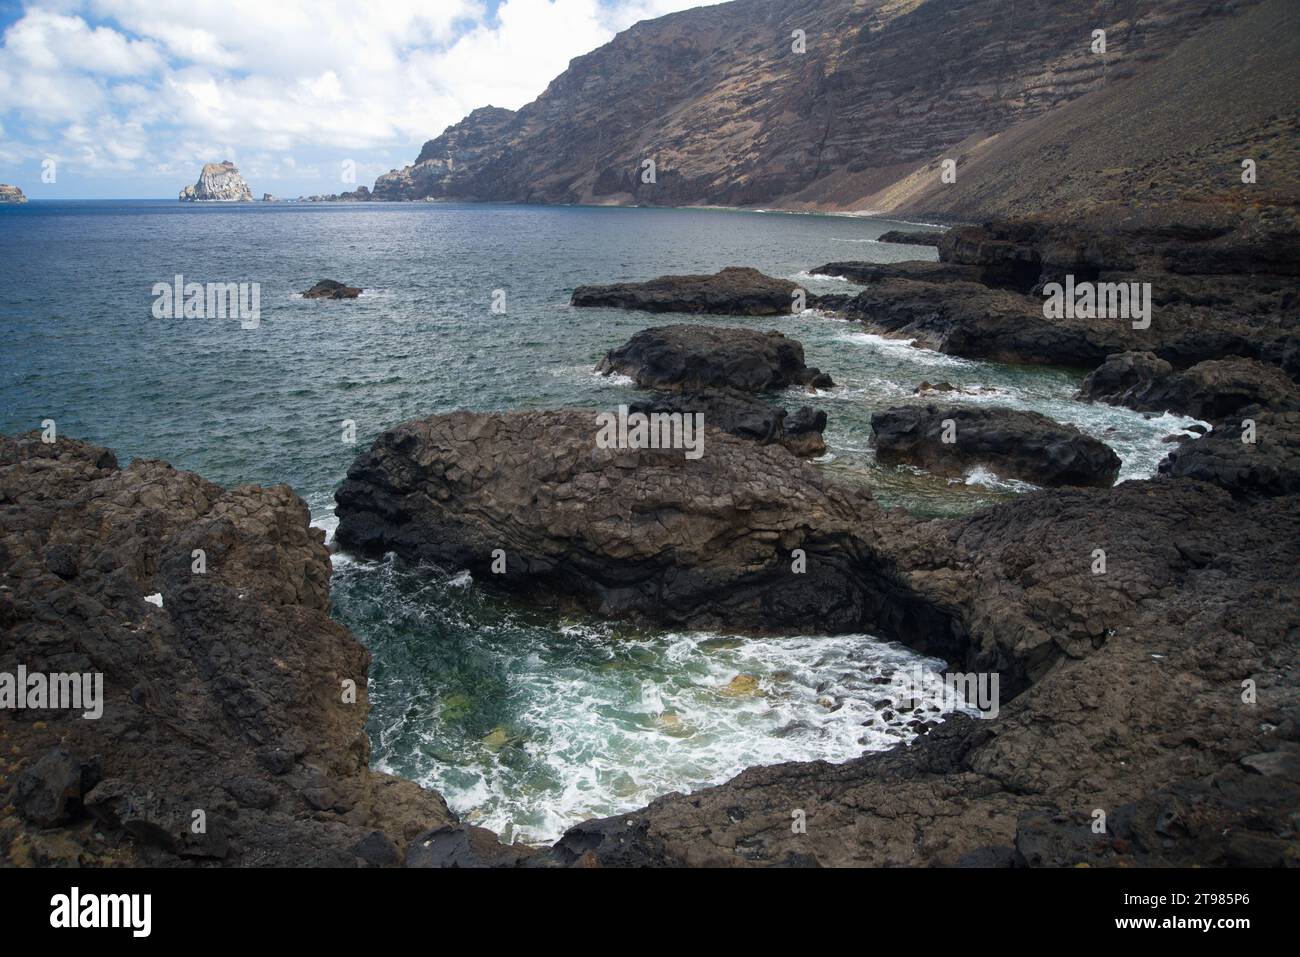 Rocky landscape of the island of El Hierro. Paisaje rocoso de la isla de El Hierro. Stock Photo